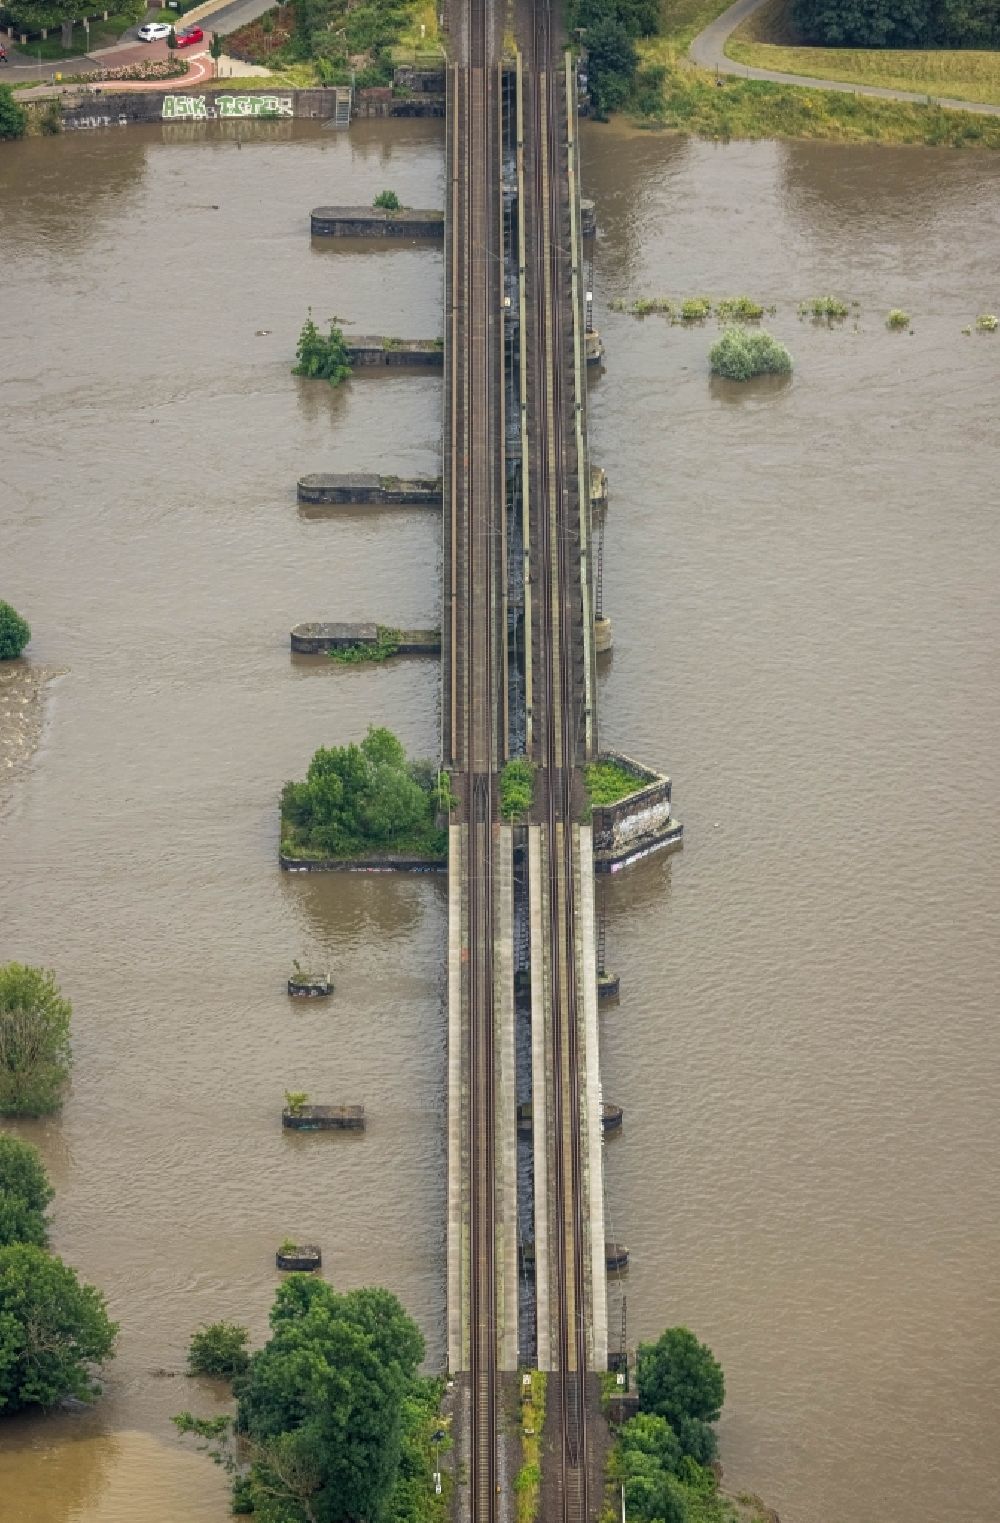 Luftbild Oberhausen - Hochwasser am Bahn- Brückenbauwerk über die Ruhr in Oberhausen im Bundesland Nordrhein-Westfalen, Deutschland